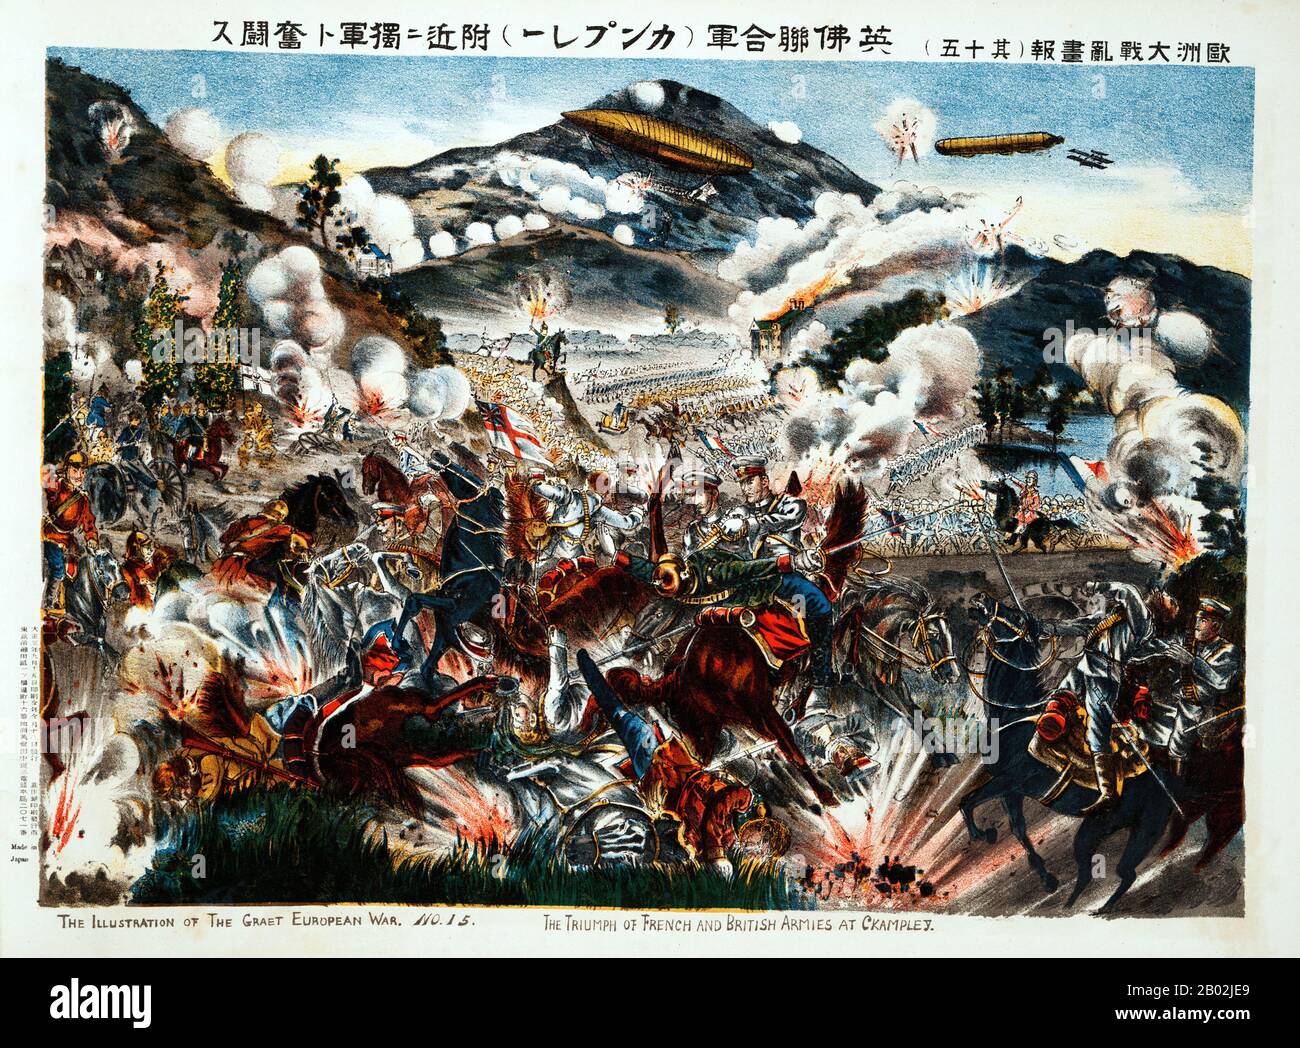 Die Belagerung von Tsingtao war der Angriff auf den deutsch kontrollierten Hafen von Tsingtao (heute Qingdao) in China während des ersten Weltkriegs durch das Kaiserliche Japan und Großbritannien. Sie fand zwischen dem 31. Oktober und dem 7. November 1914 statt und wurde vom Kaiserlichen Japan und dem Vereinigten Königreich gegen Deutschland gekämpft. Es war die erste Begegnung zwischen japanischen und deutschen Streitkräften und auch die erste britisch-japanische Operation während des Krieges. Stockfoto